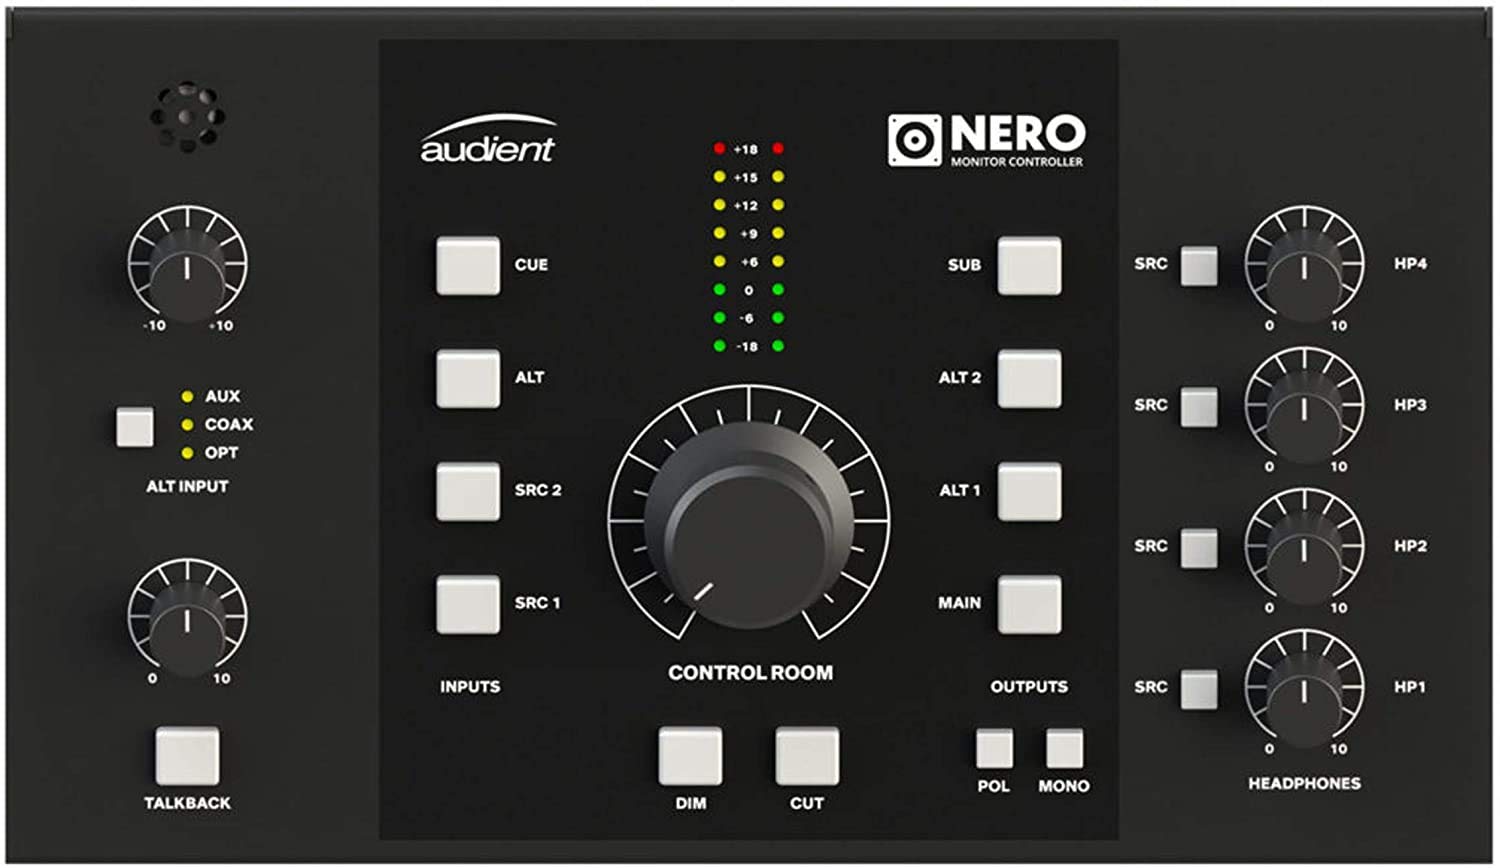 Audient Nero 데스크탑 모니터 컨트롤러